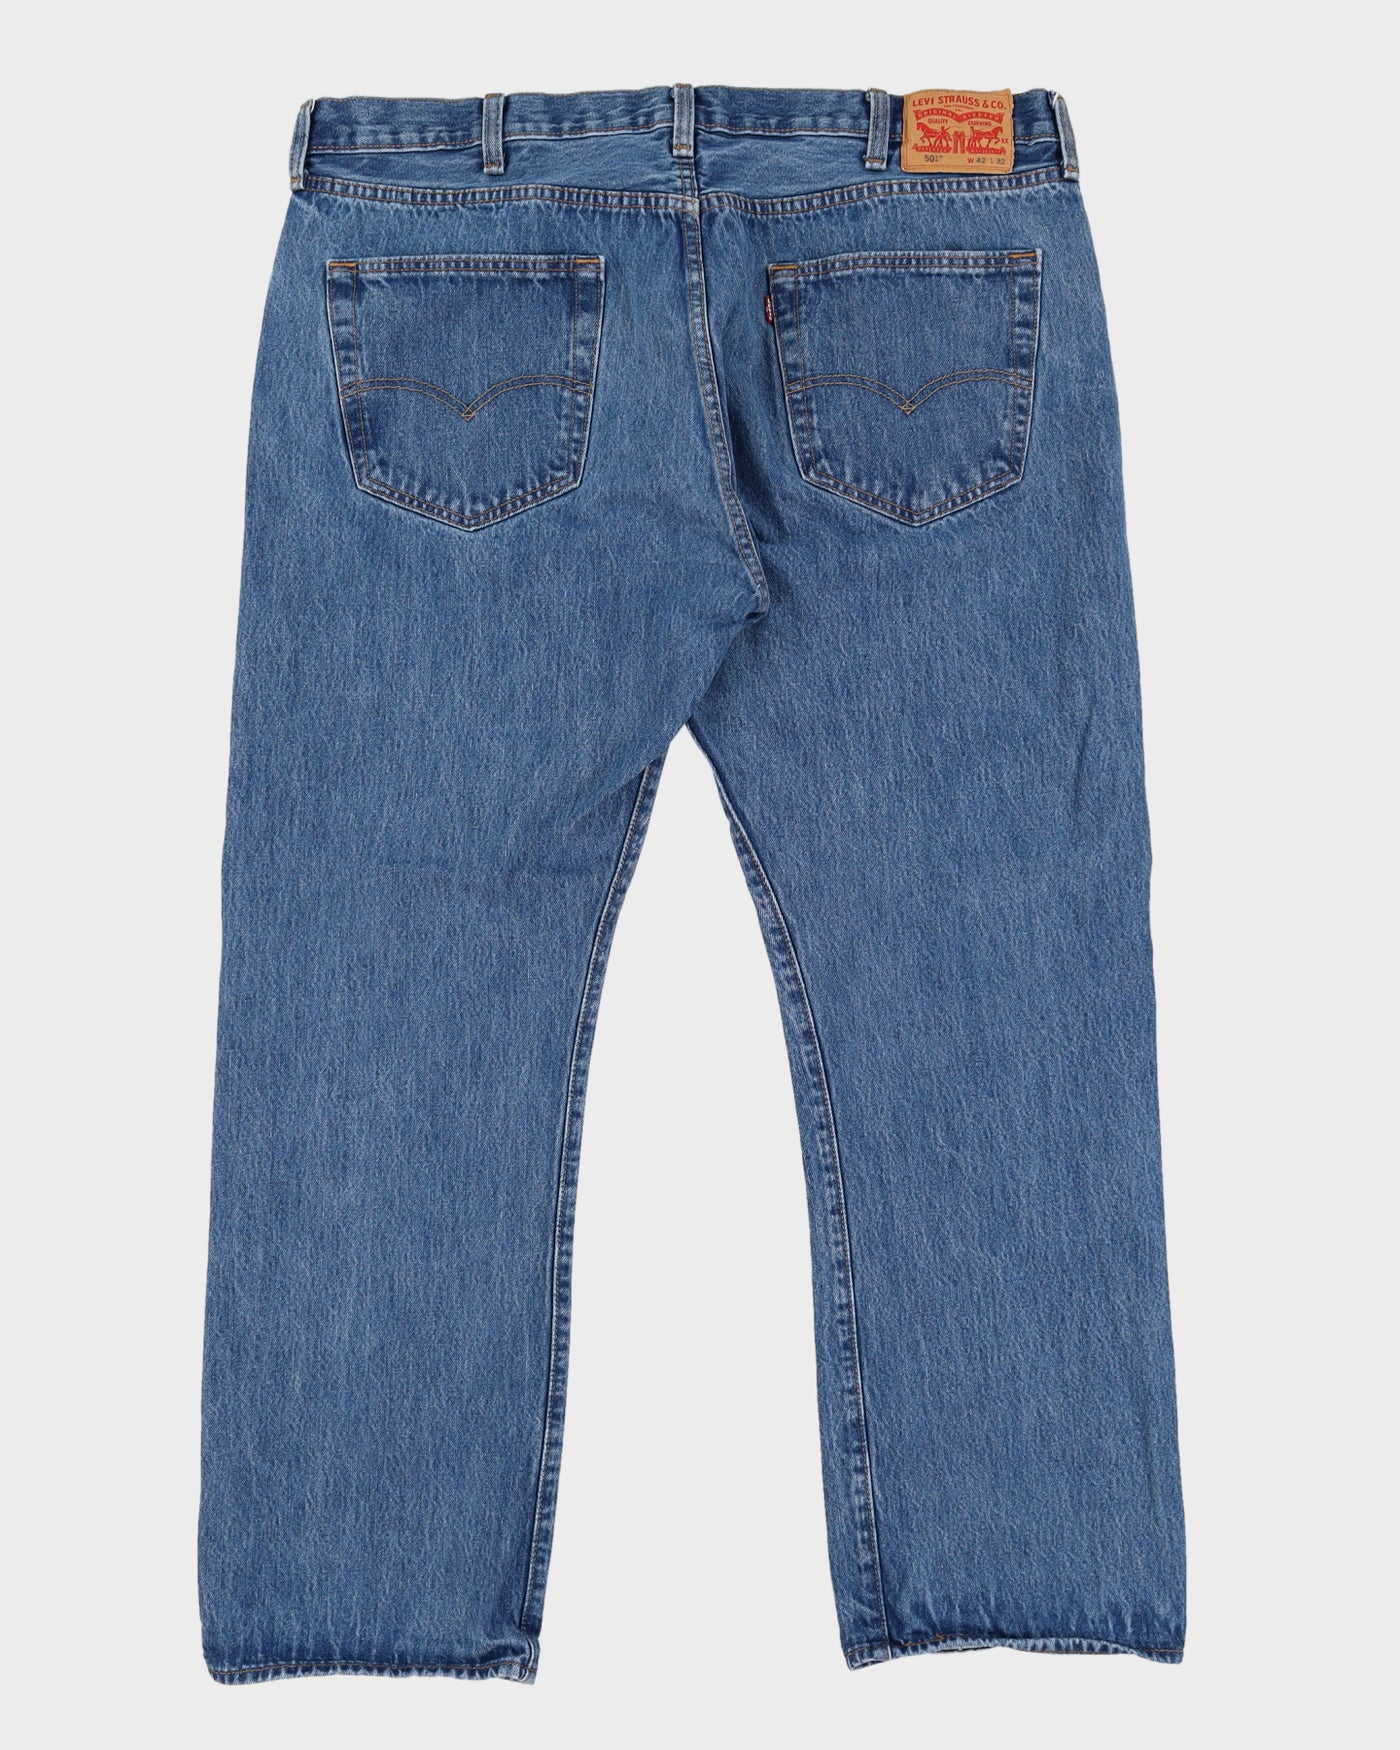 Vintage 90s Levi's 501 Blue Jeans - W42 L31